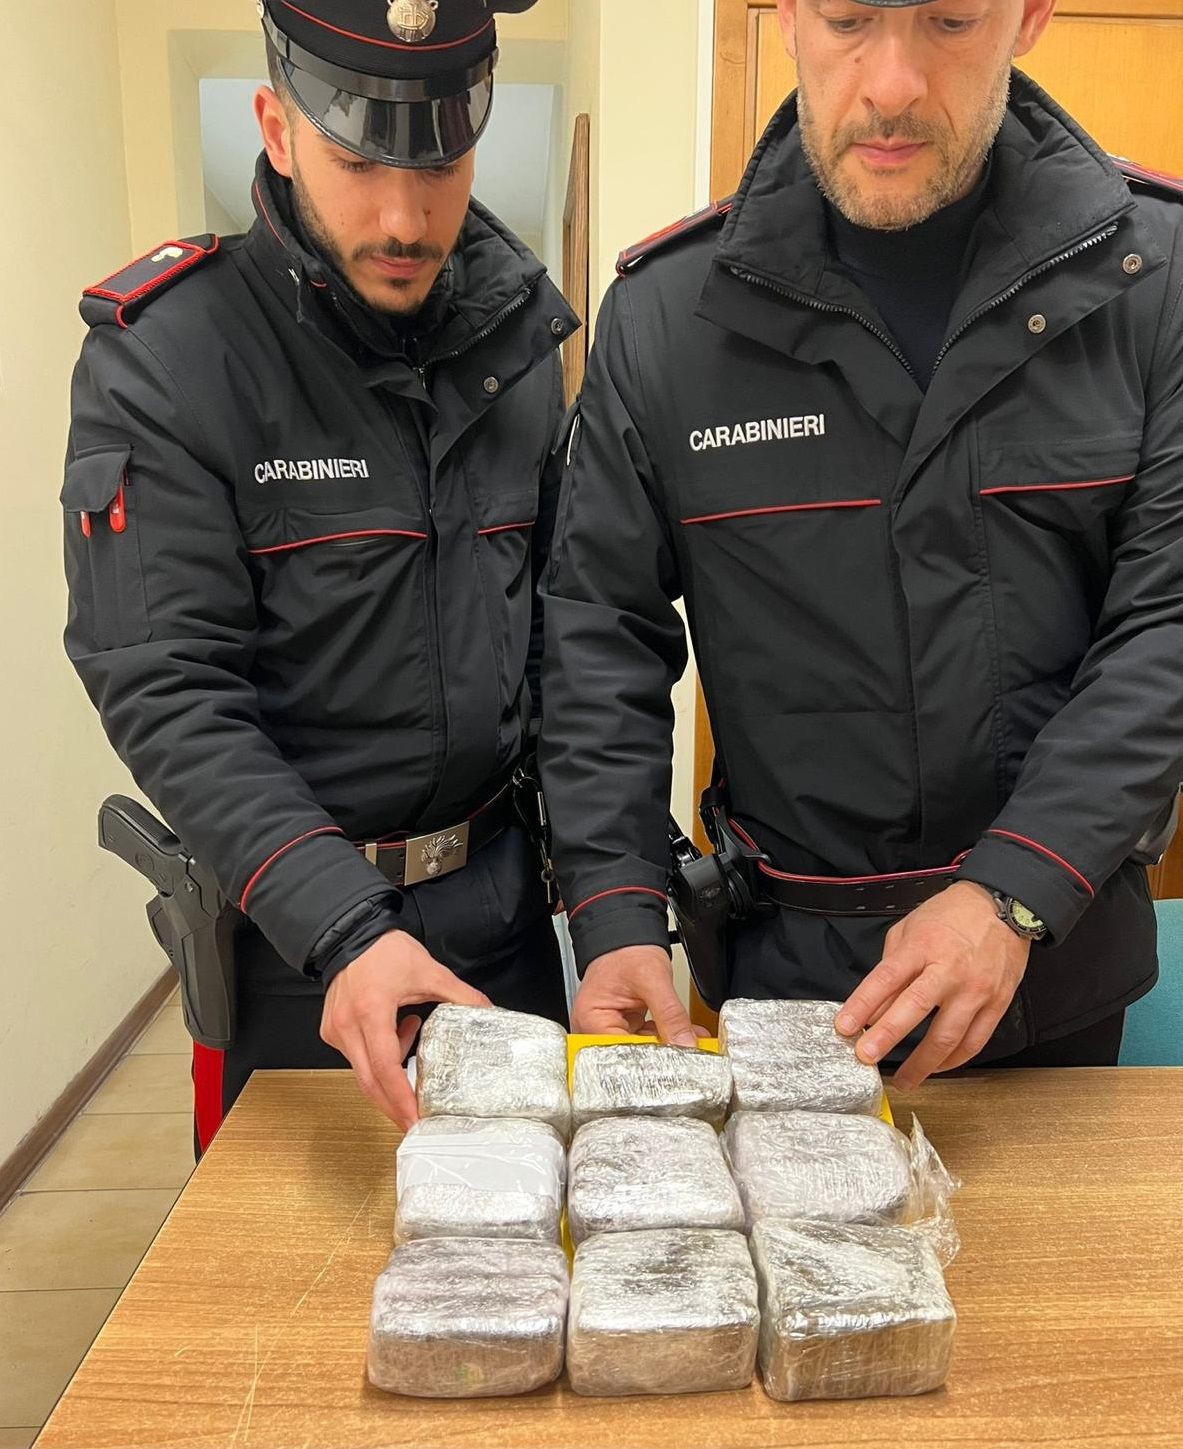 La droga rinvenuta dai carabinieri a seguito dei controlli 